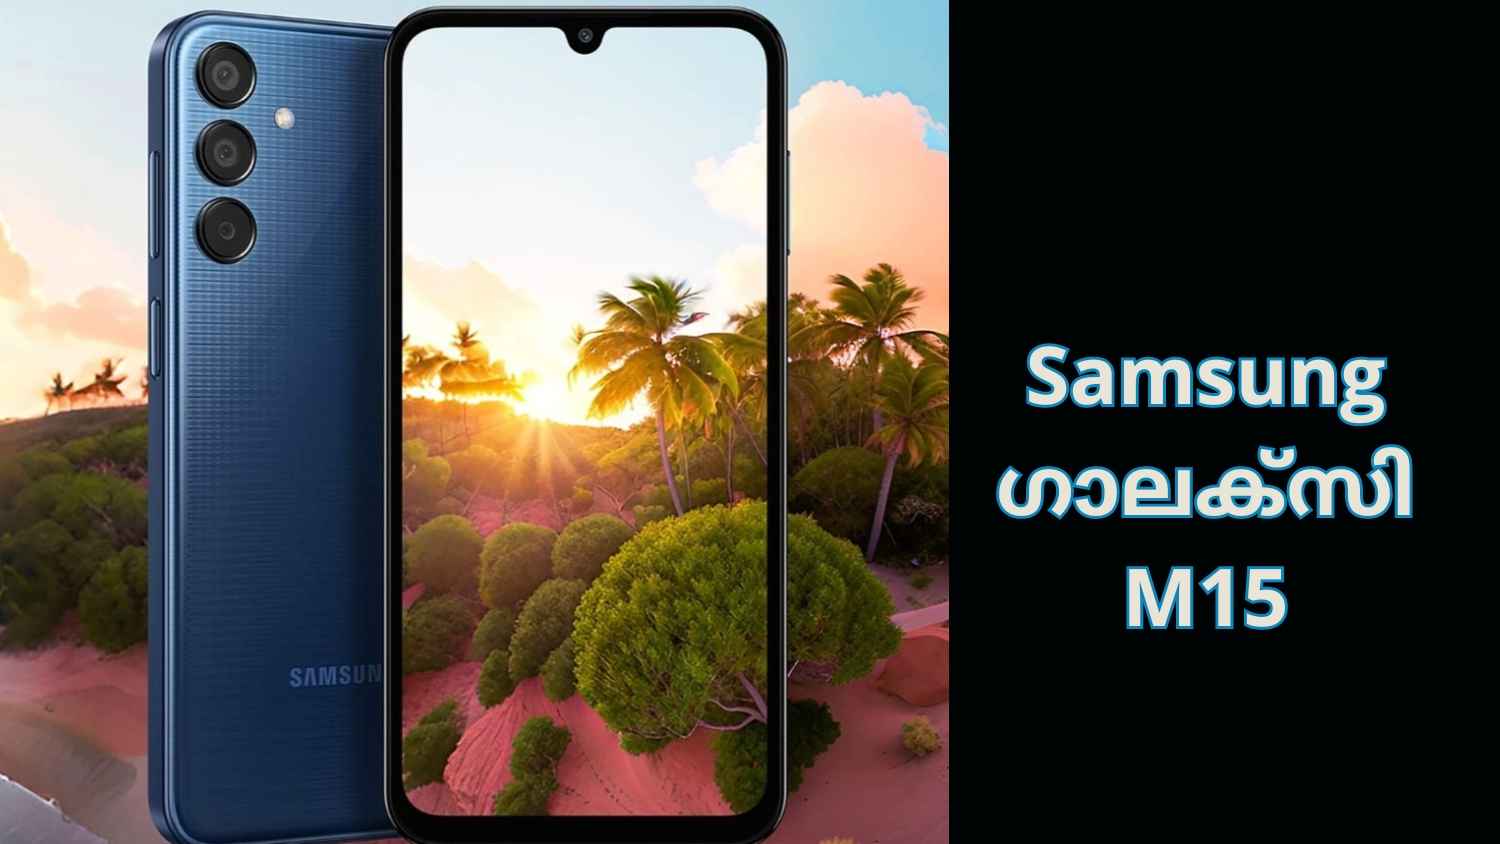 Samsung Galaxy M15 5G: 6000mAh ബാറ്ററി, Triple ക്യാമറ! കാത്തിരിപ്പിനൊടുവിൽ ആ ഗാലക്സി ഫോൺ എത്തി